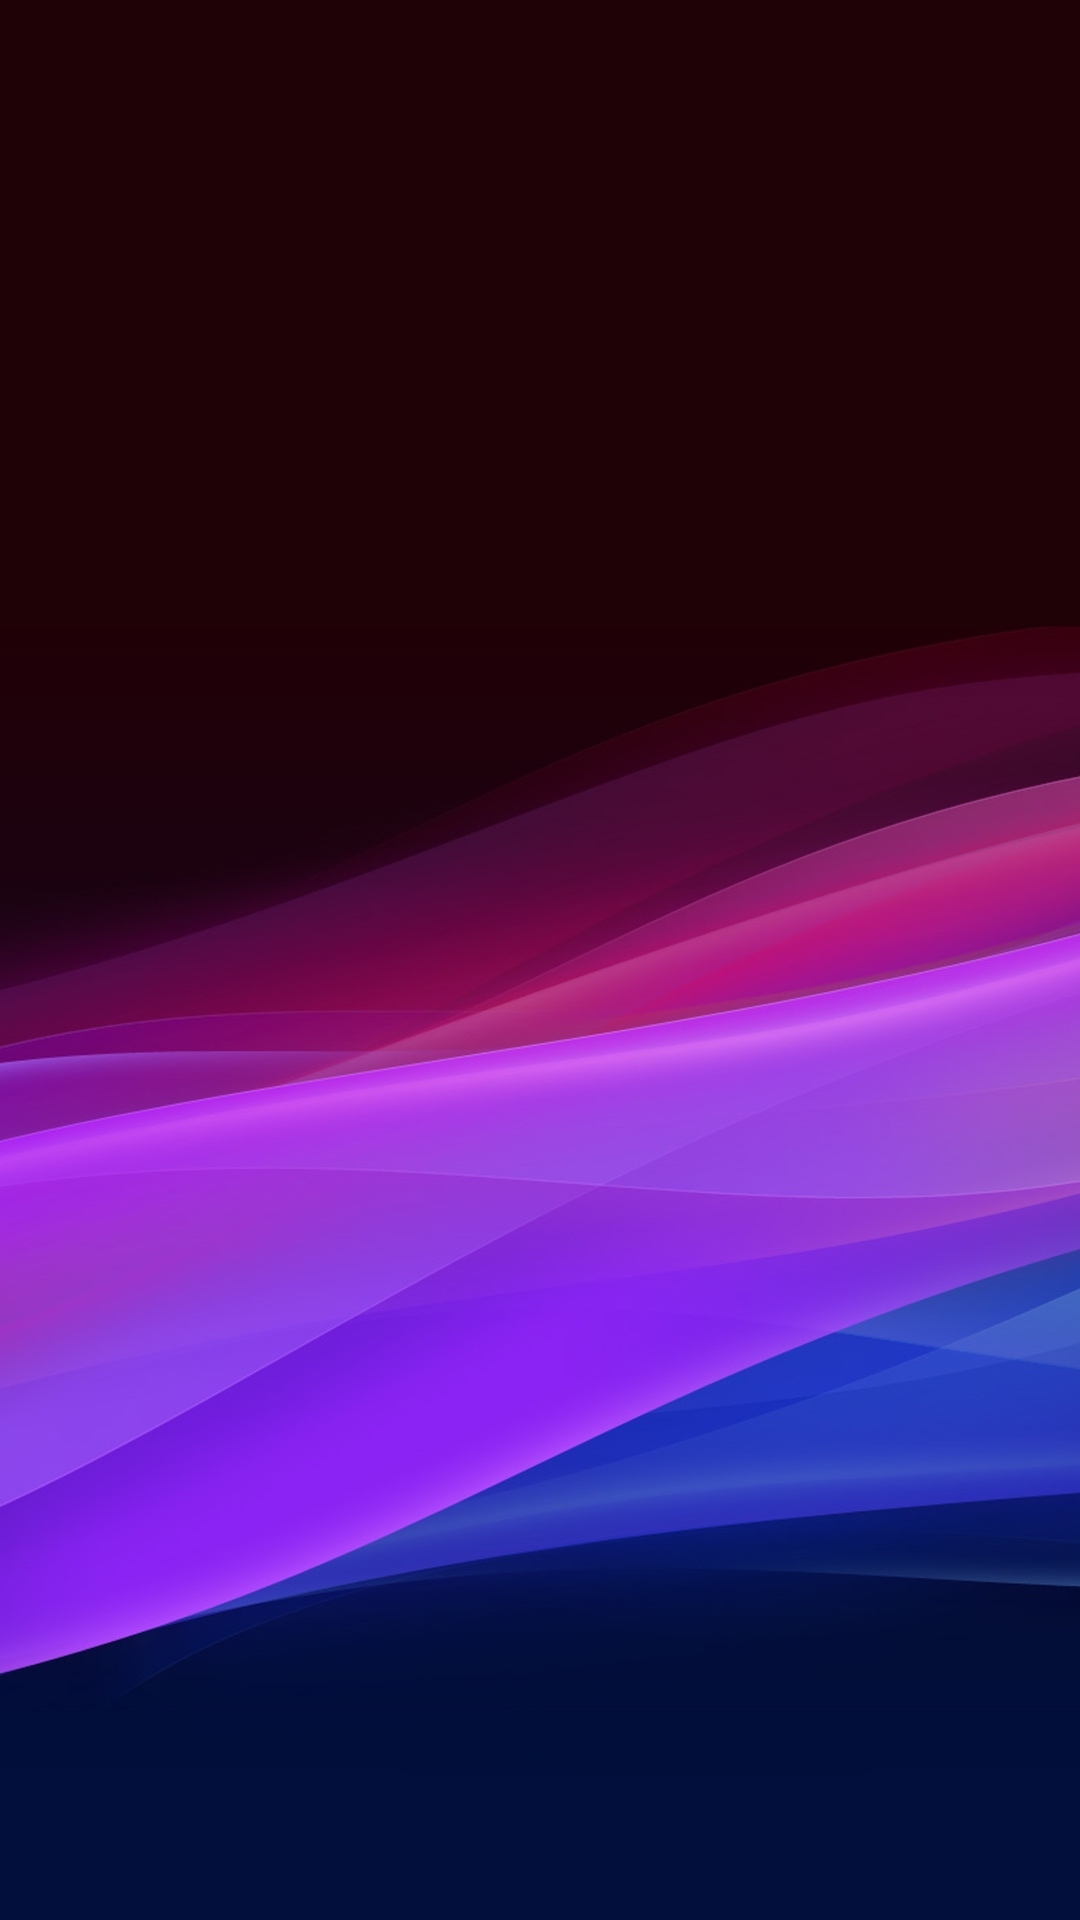 fonds d'écran huawei p9 lite,violet,bleu,violet,lumière,rose